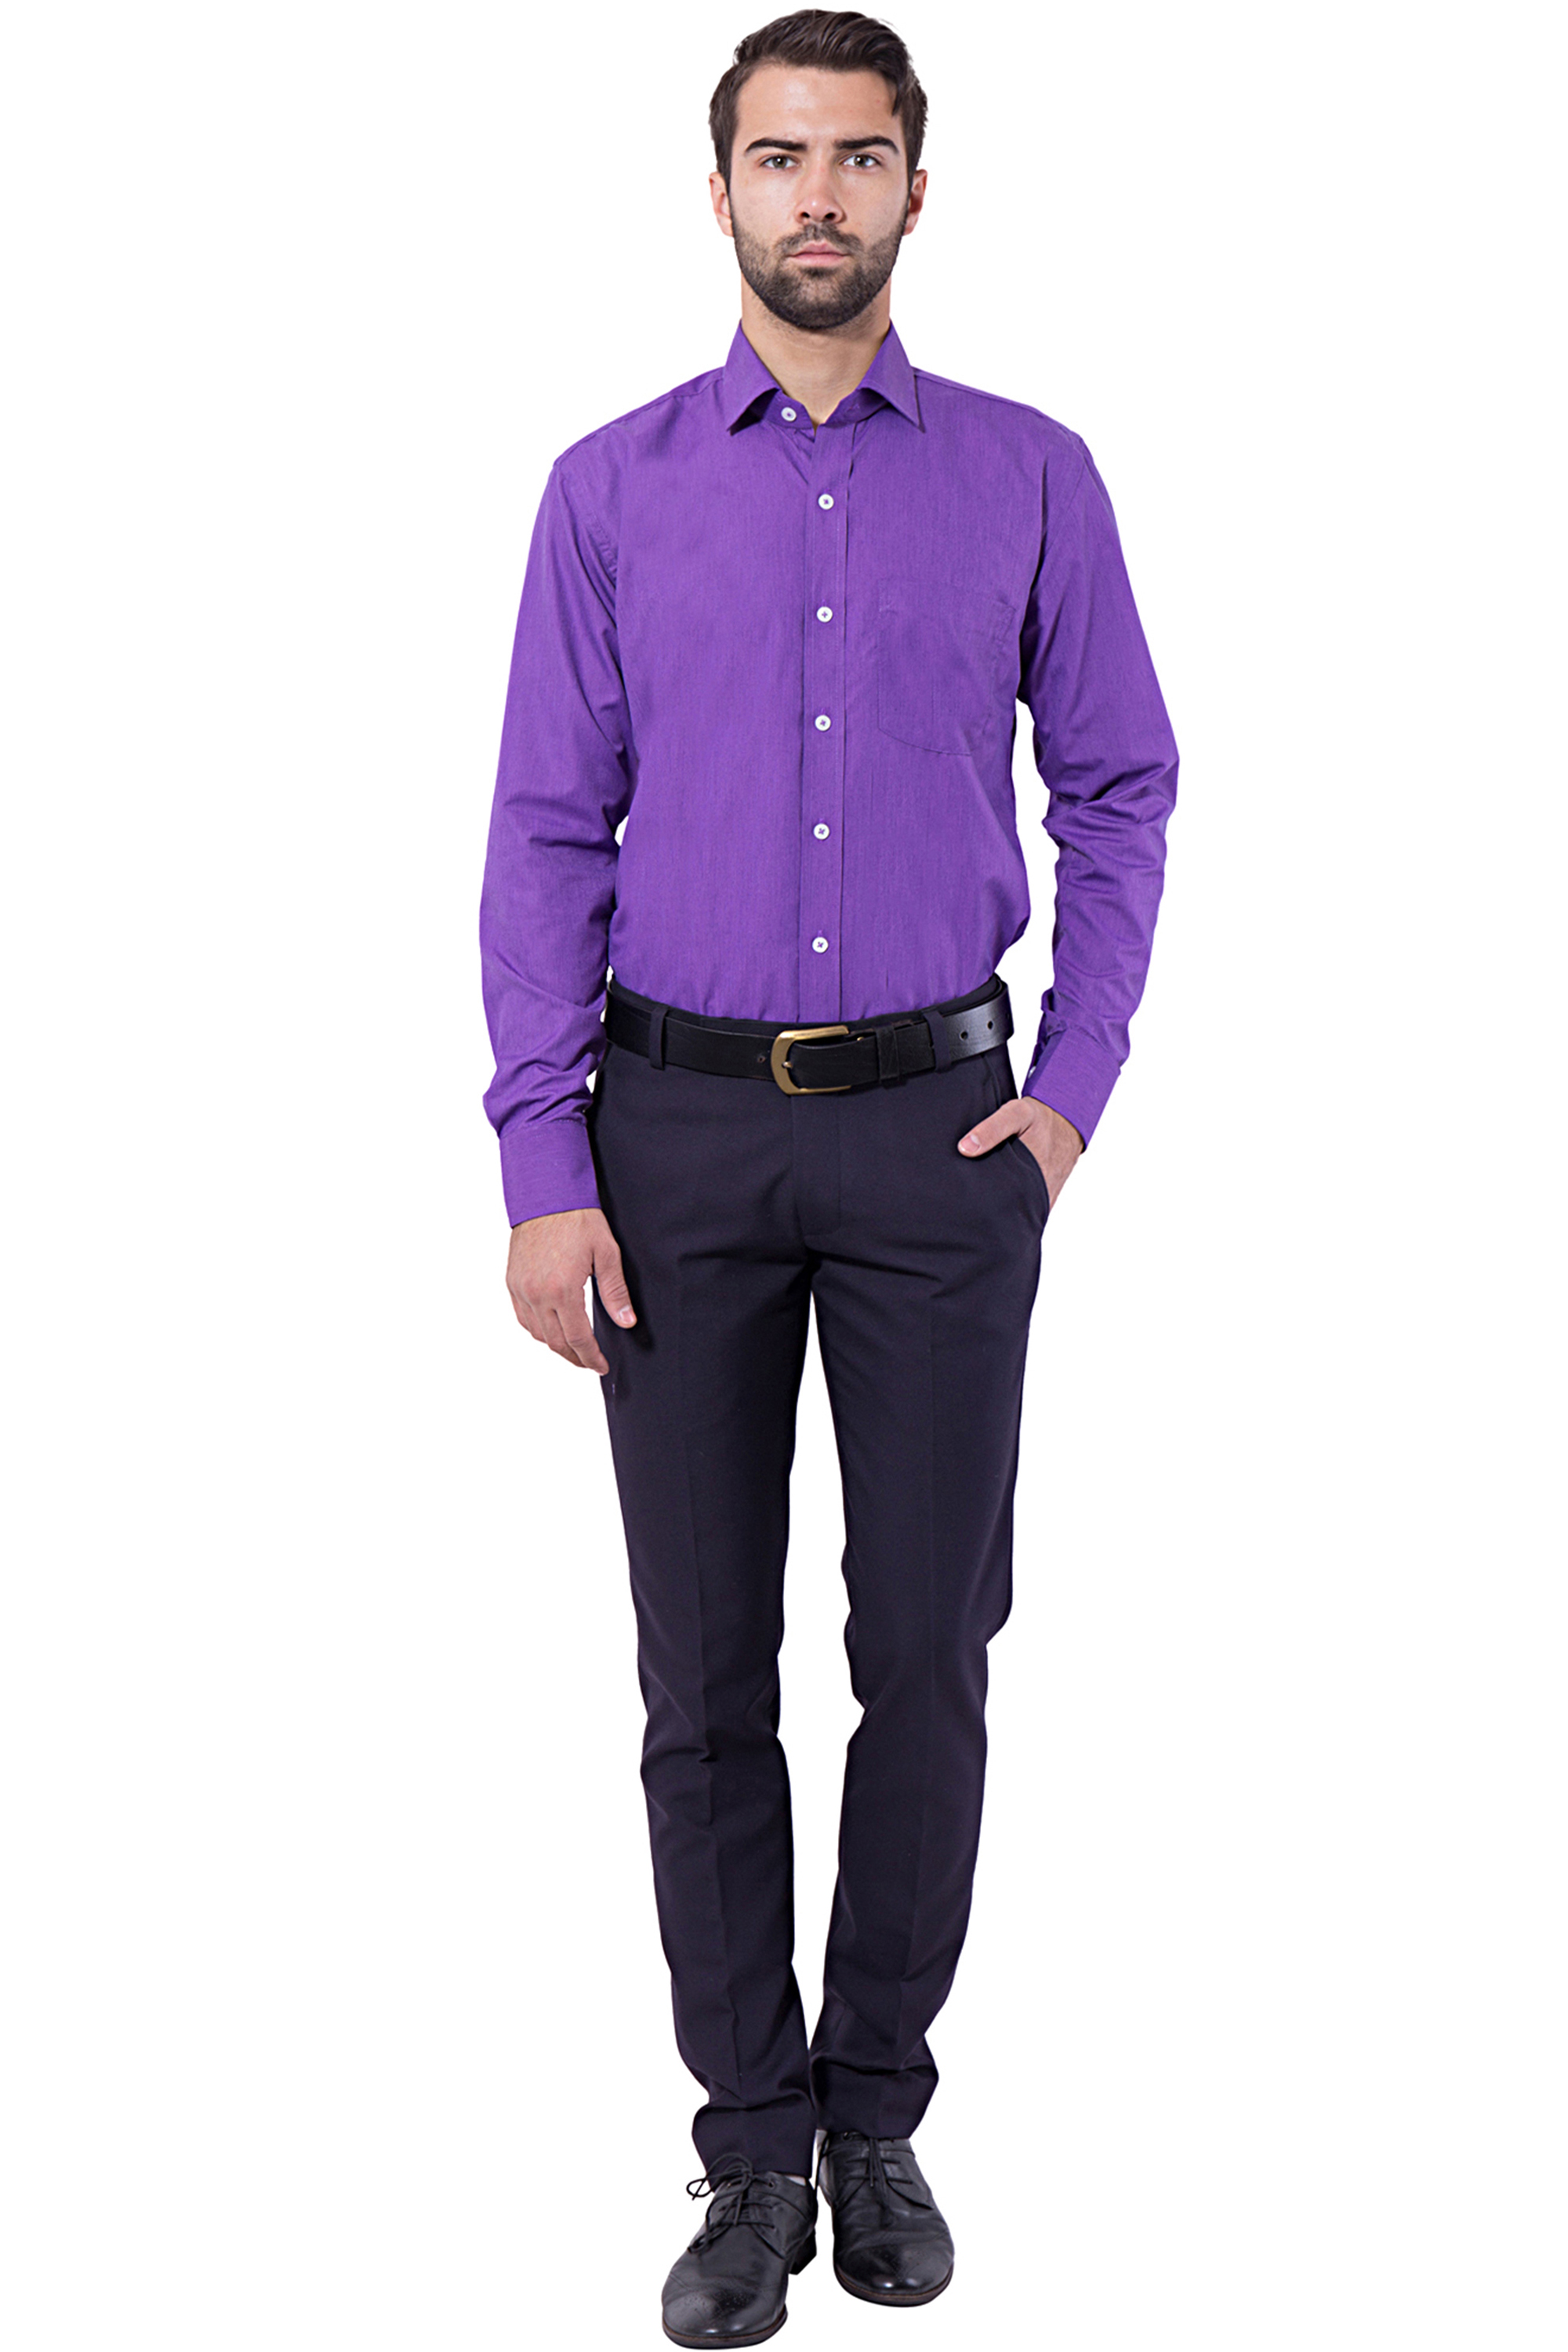 Buy Formal Shirt Violet Color Slim Fit for Men Online @ ₹749 from ShopClues